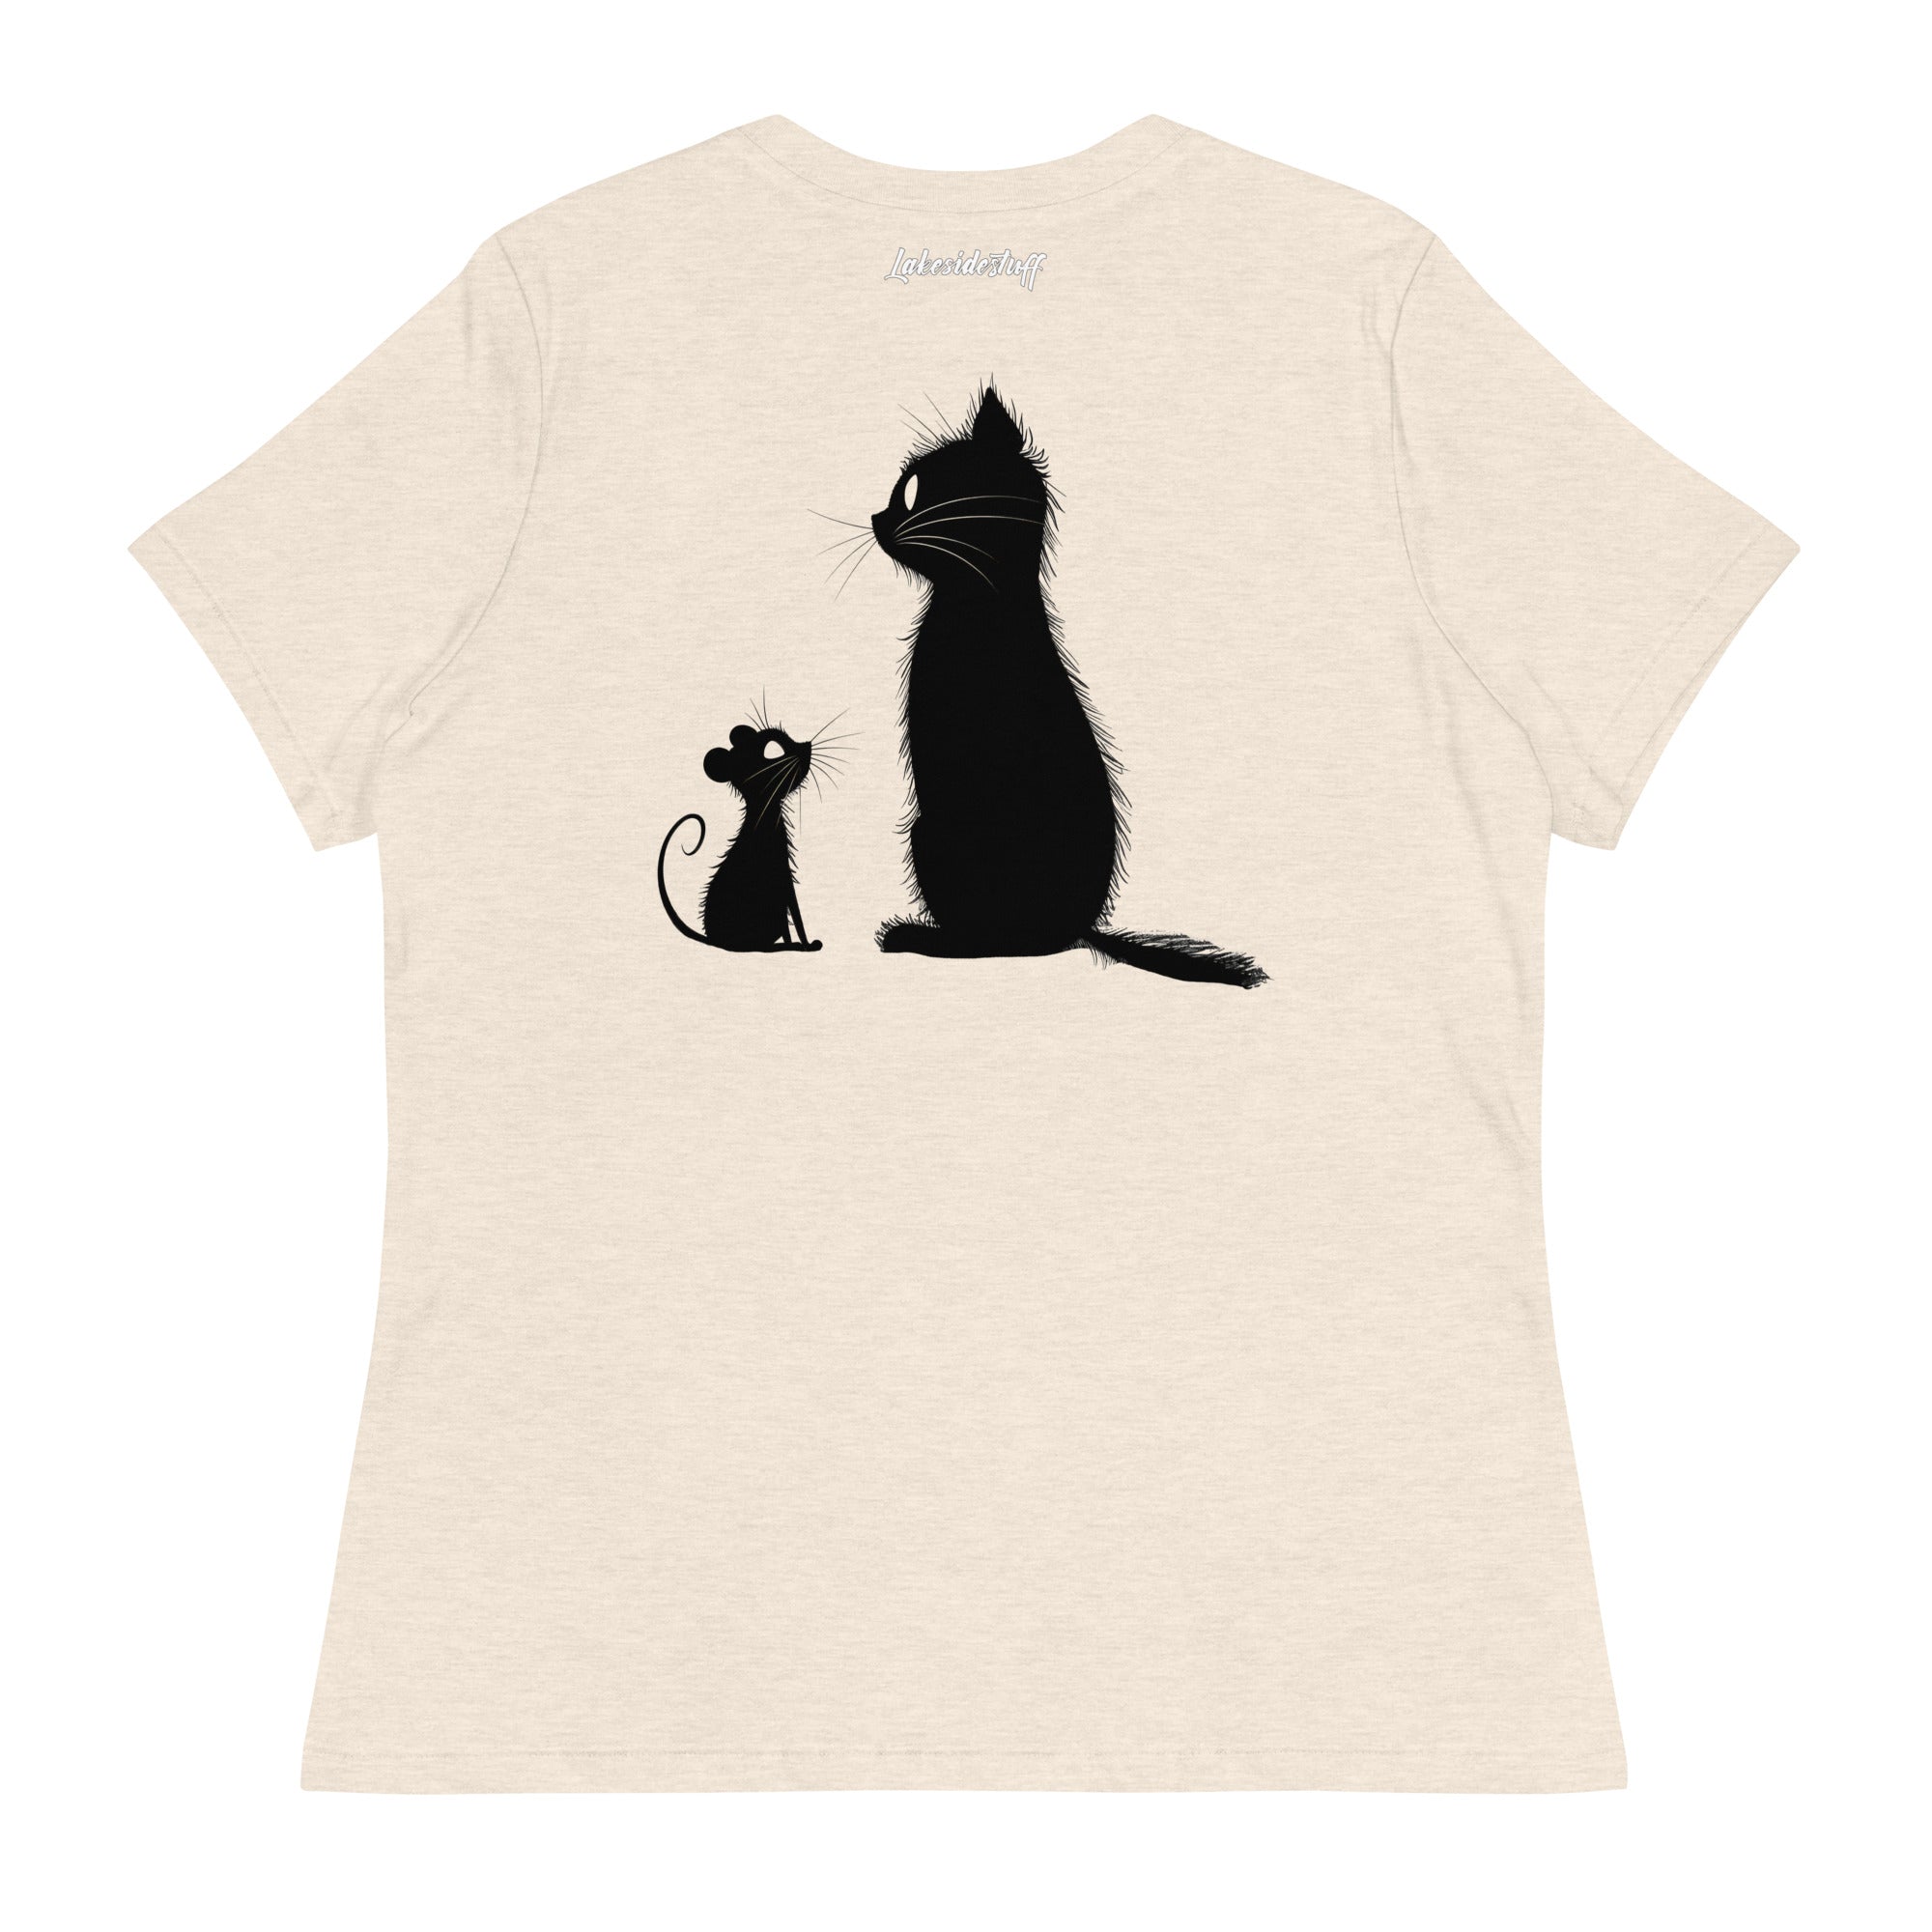 T-Shirt Damen - Backprint - Mouse and Cat